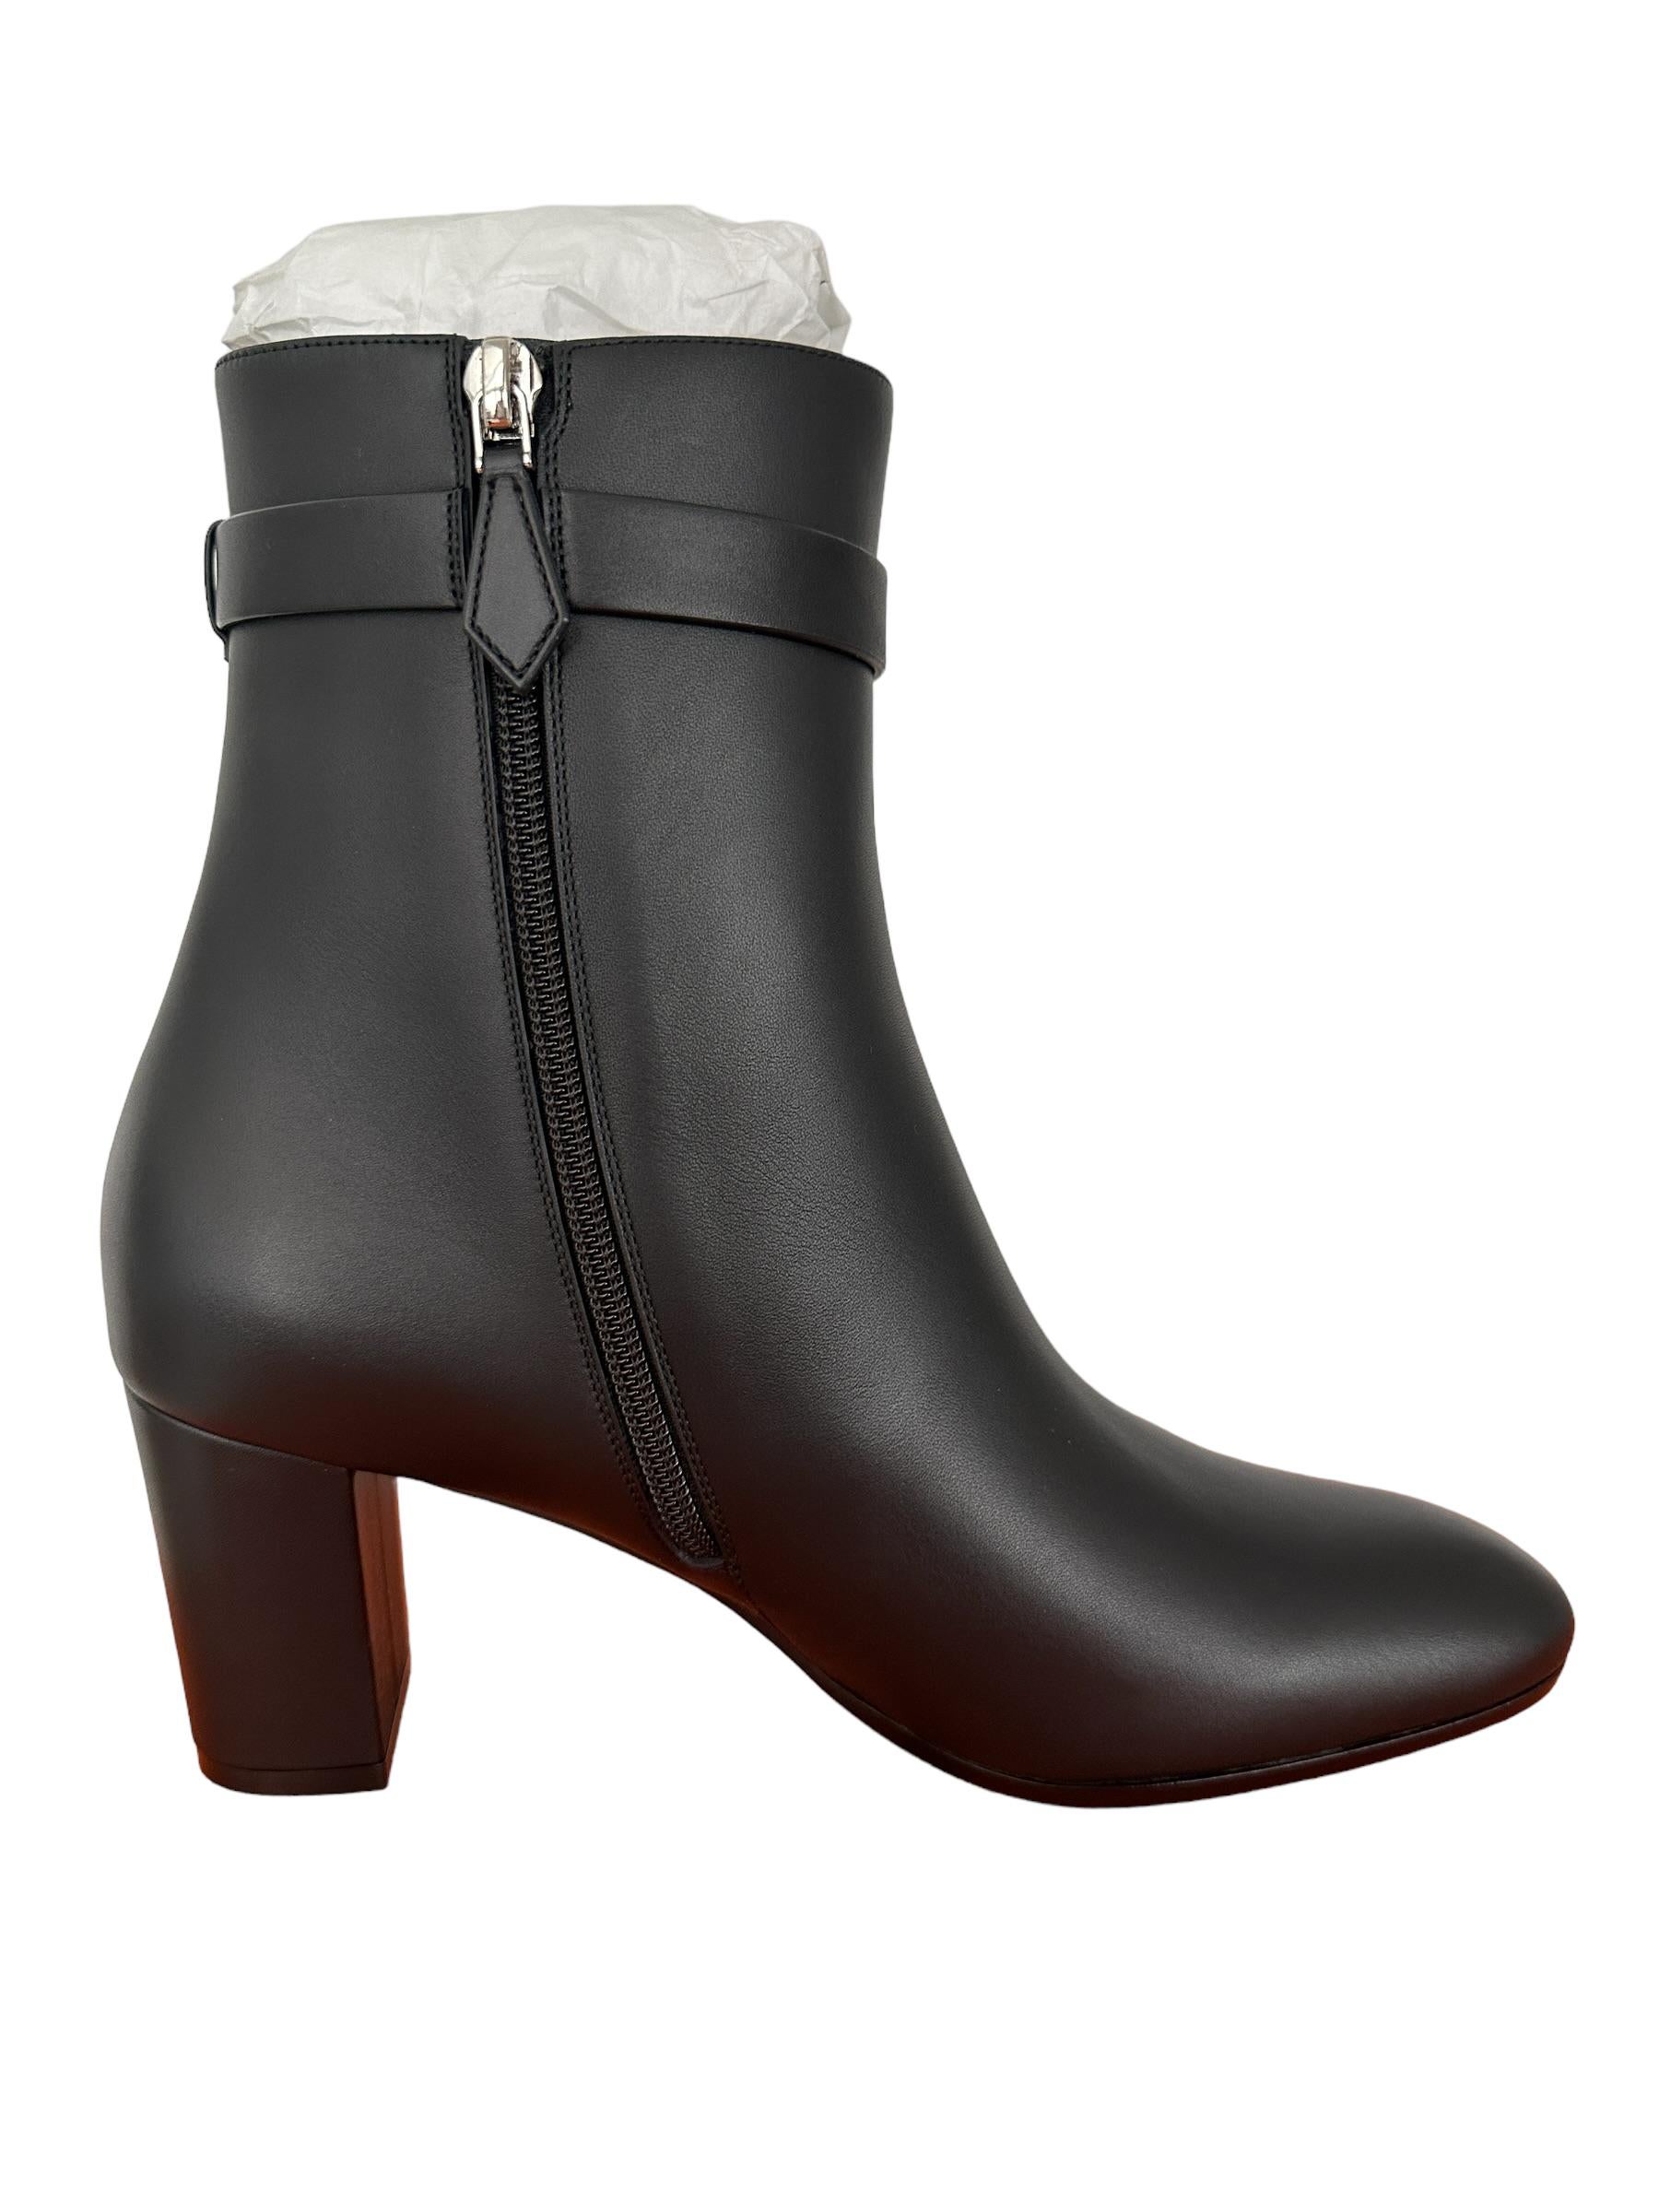 Hermes Boots Saint Germain Ankle Boot Black 40 Kelly Buckle $2000 prix boutique Neuf - En vente à West Chester, PA